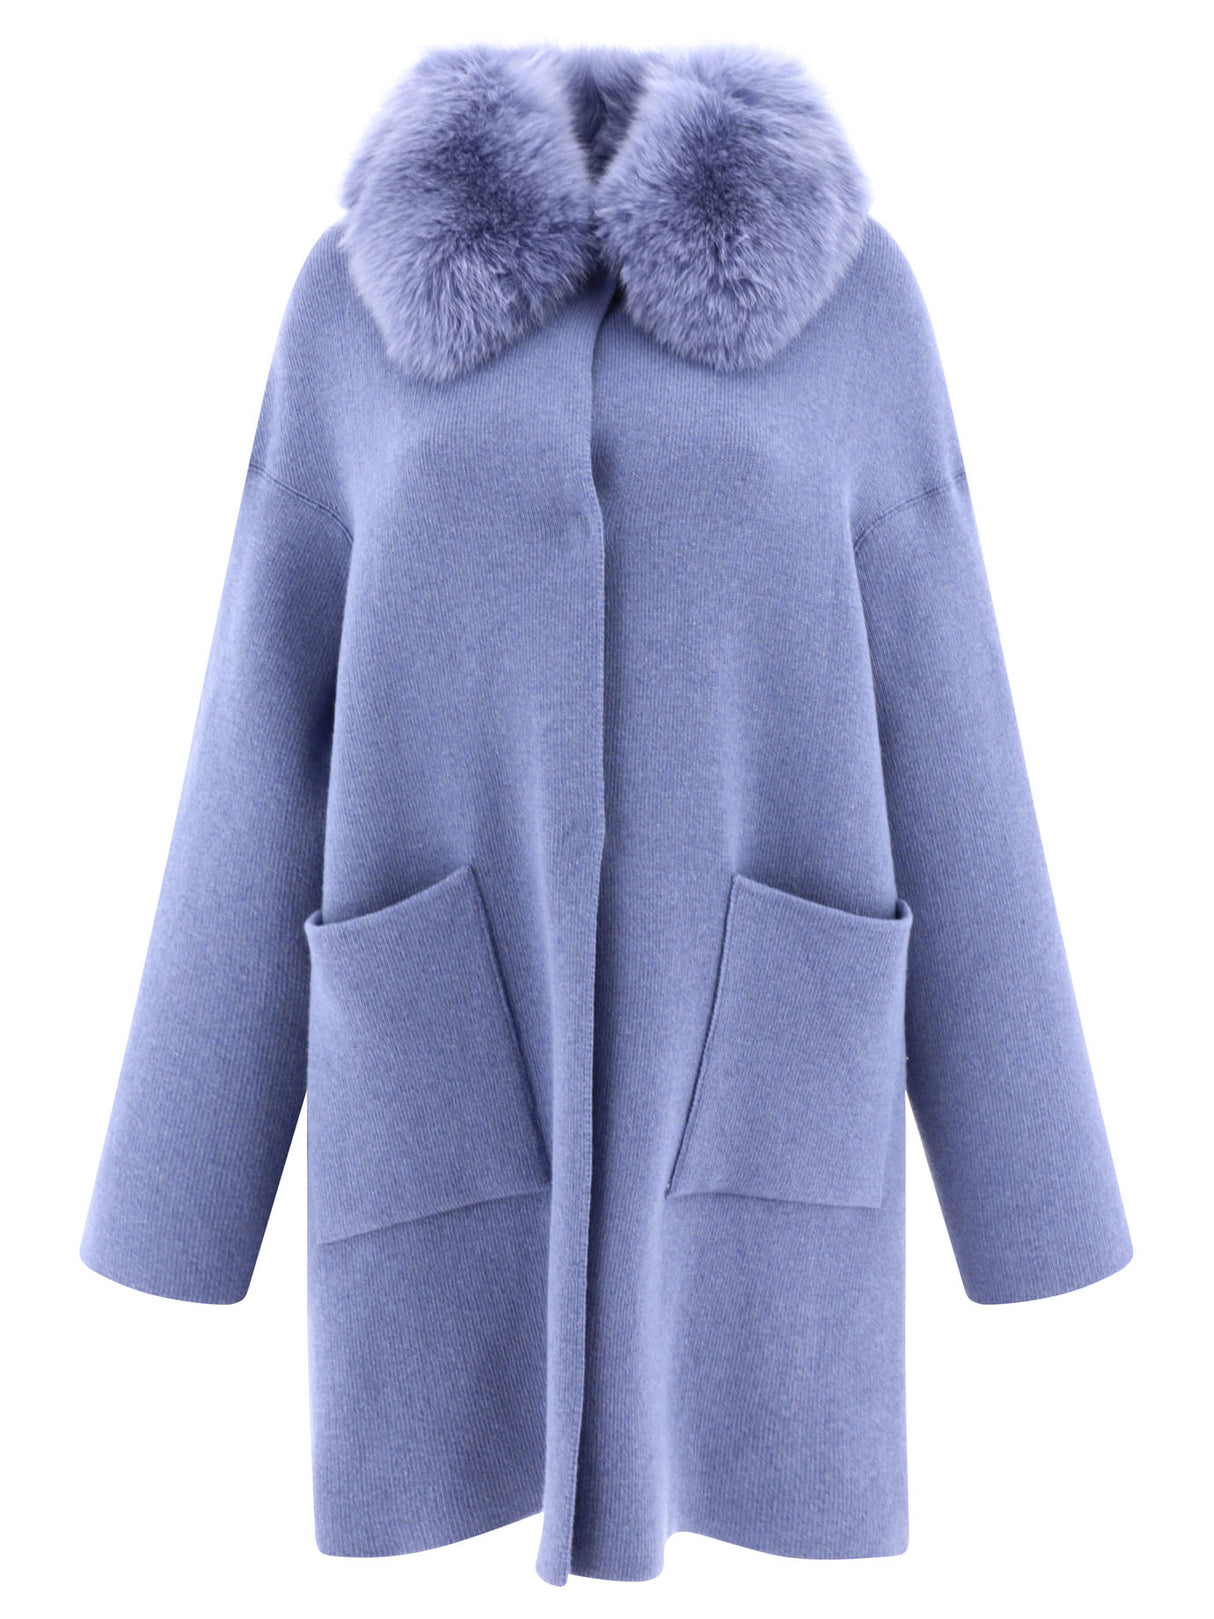 FW23 女款羊毛/羊绒外套 - 浅蓝色